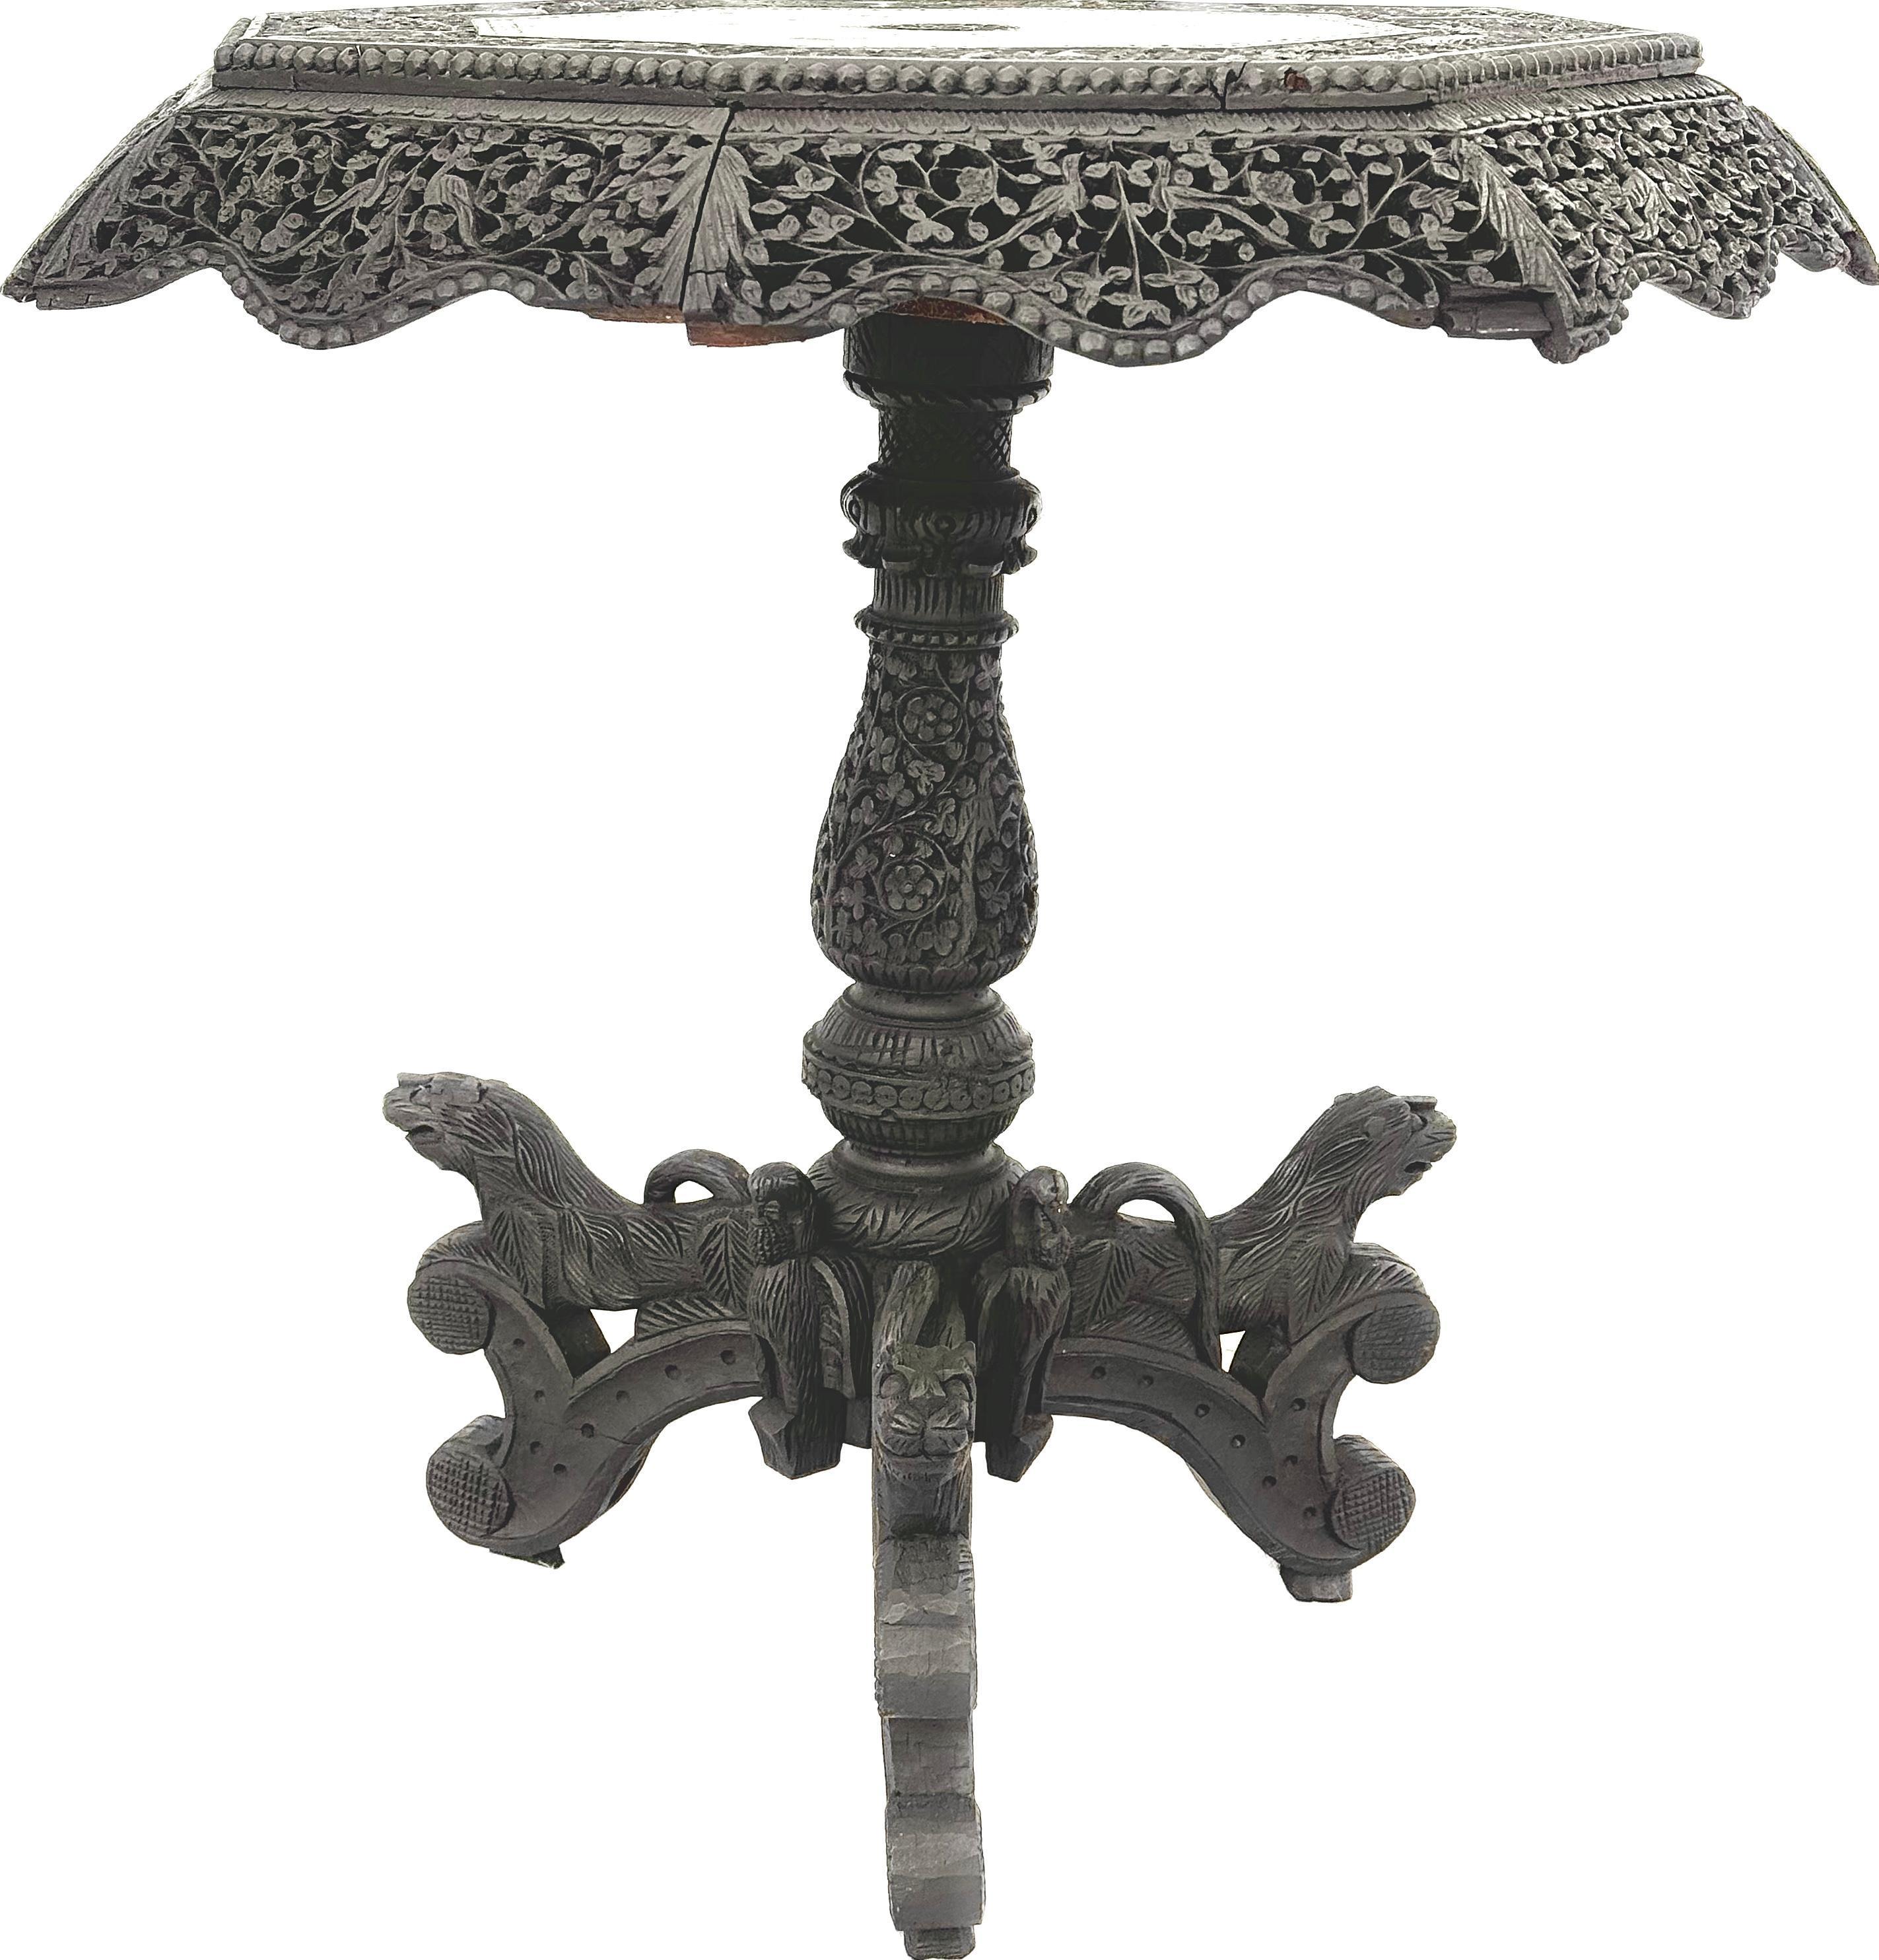 Exquise table d'appoint ronde anglo-indienne birmane sculptée du 19e siècle. La table est dotée d'un tablier filigrané et sculpté de façon complexe et d'une base sur piédestal. La base est ornée de têtes de tigre sculptées sur des pieds tripodes. 